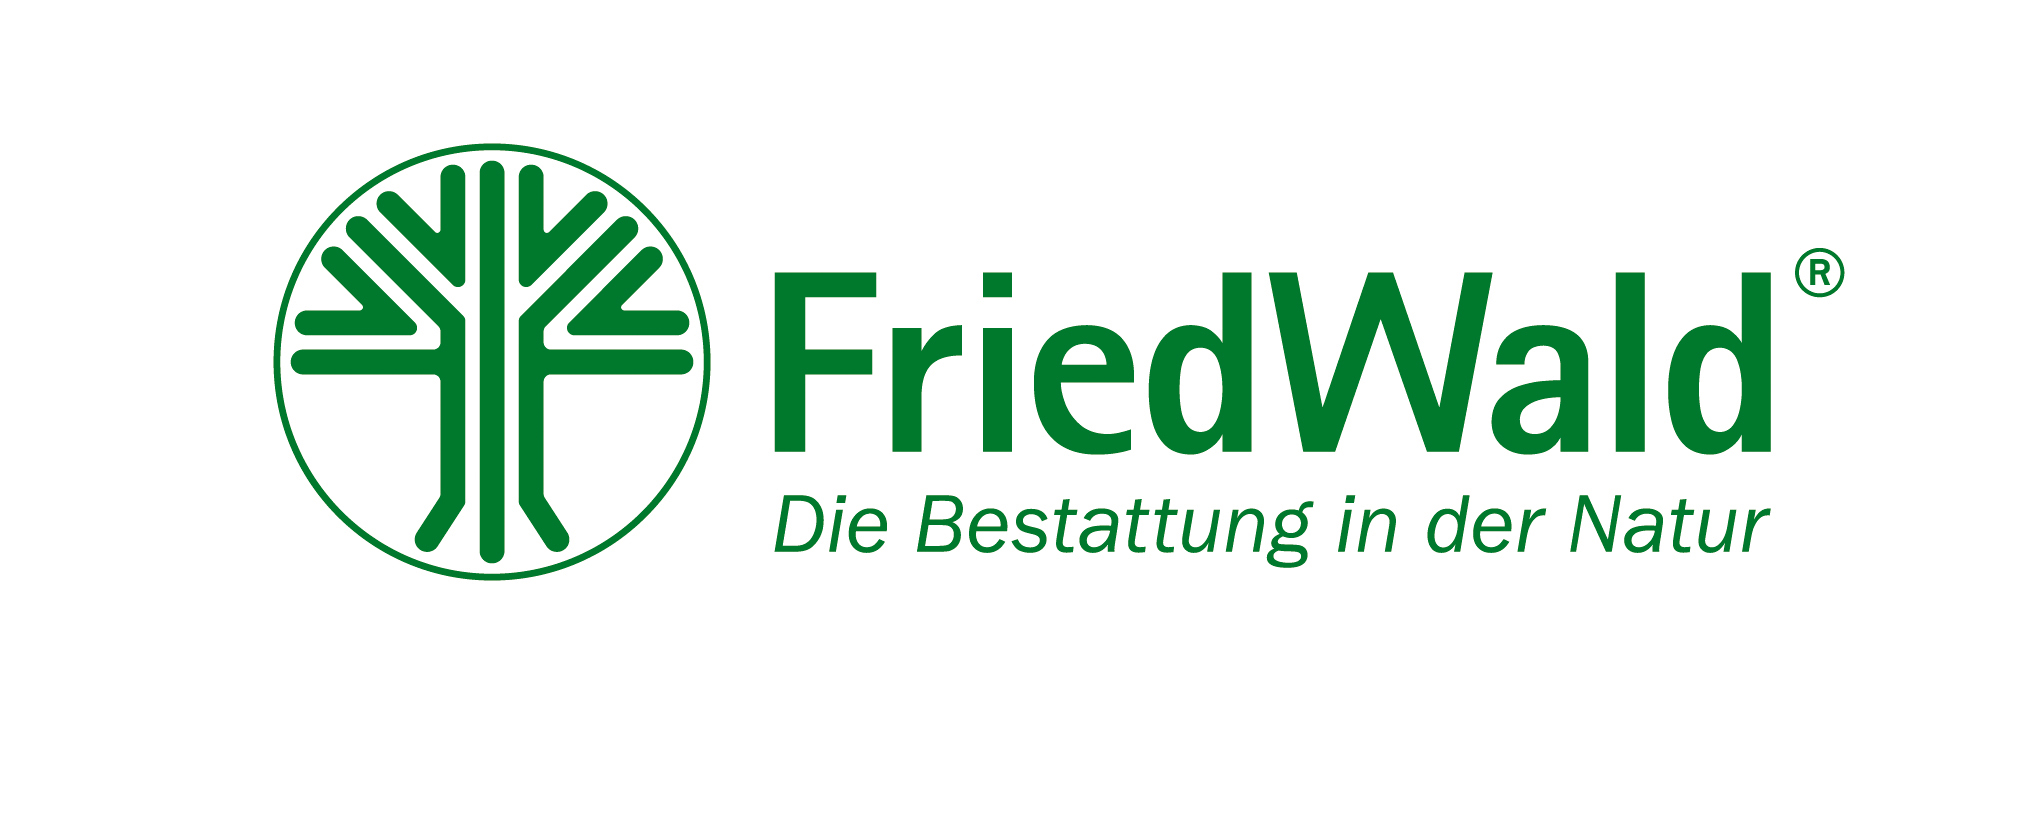 FriedWald_Logo_final_mit_Claim_RGB_7054